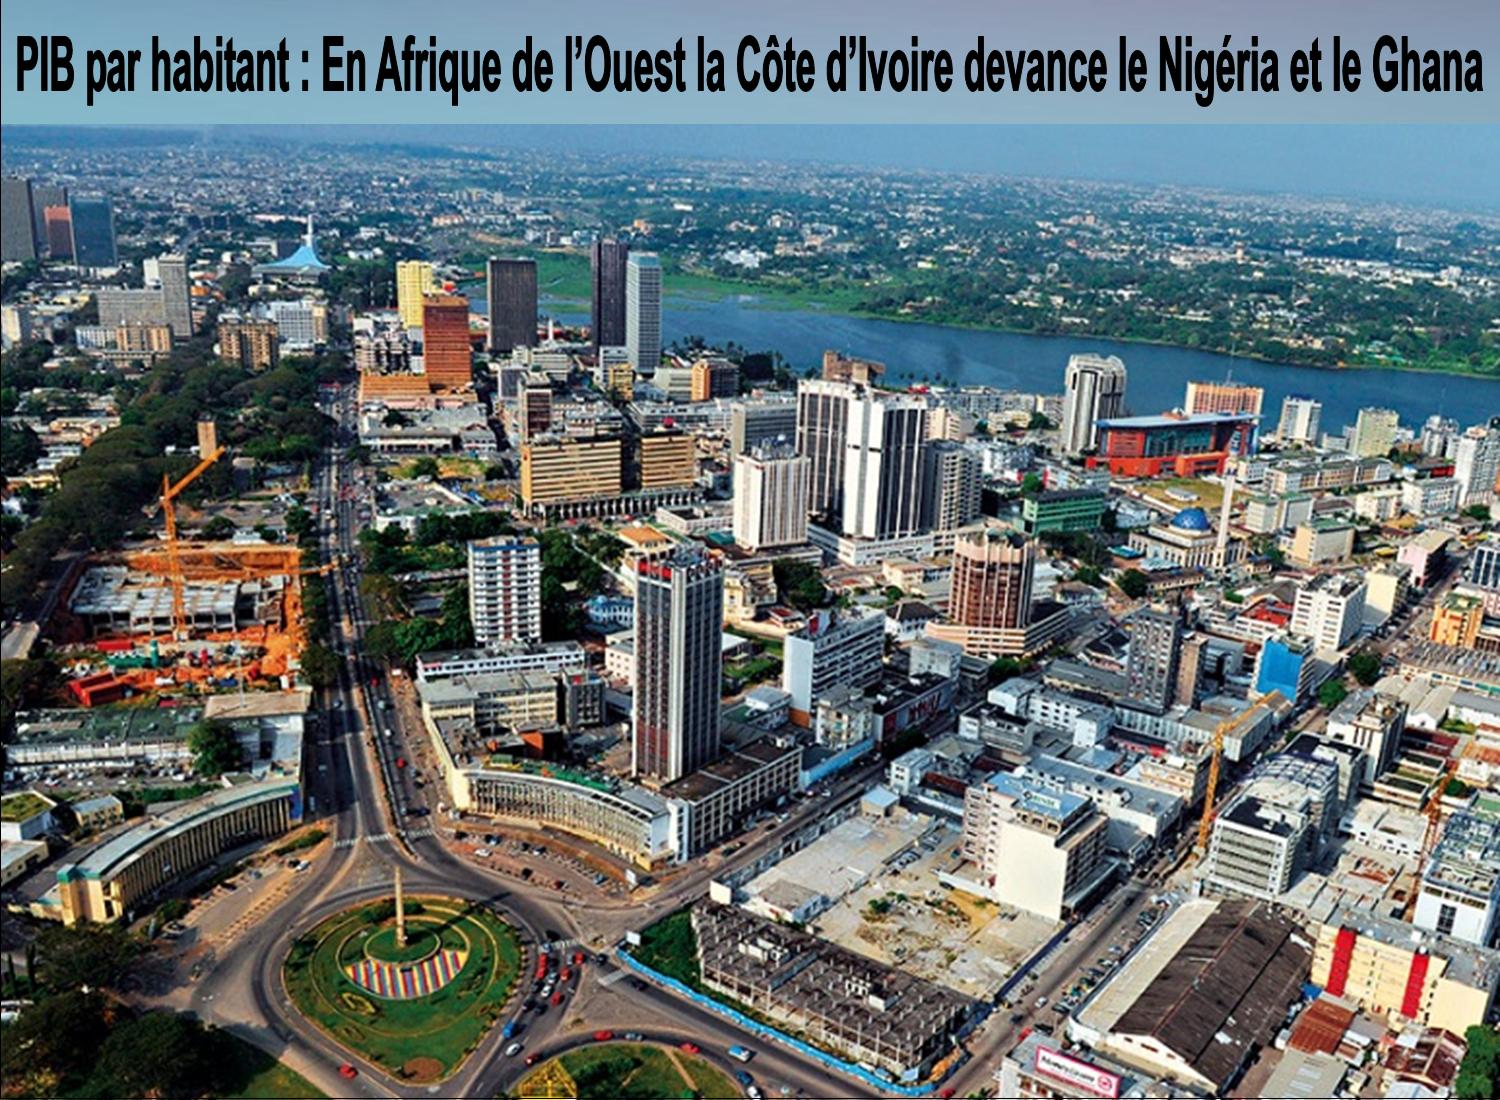 PIB par habitant : en Afrique de l'Ouest la Côte d'Ivoire devance le Nigéria et le Ghana.jpg